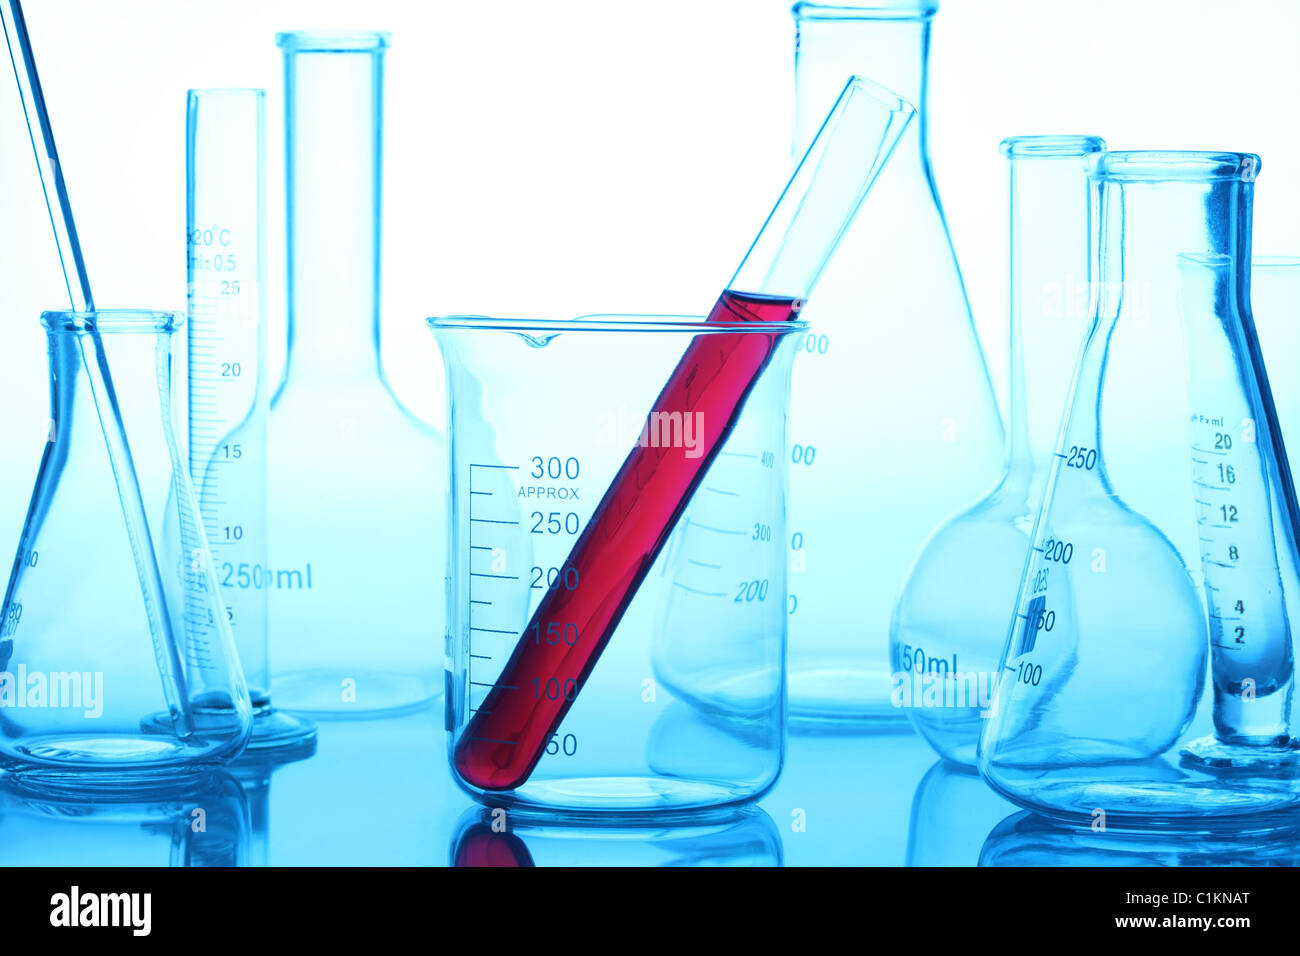 Laboratory glassware in laboratory Stock Photo